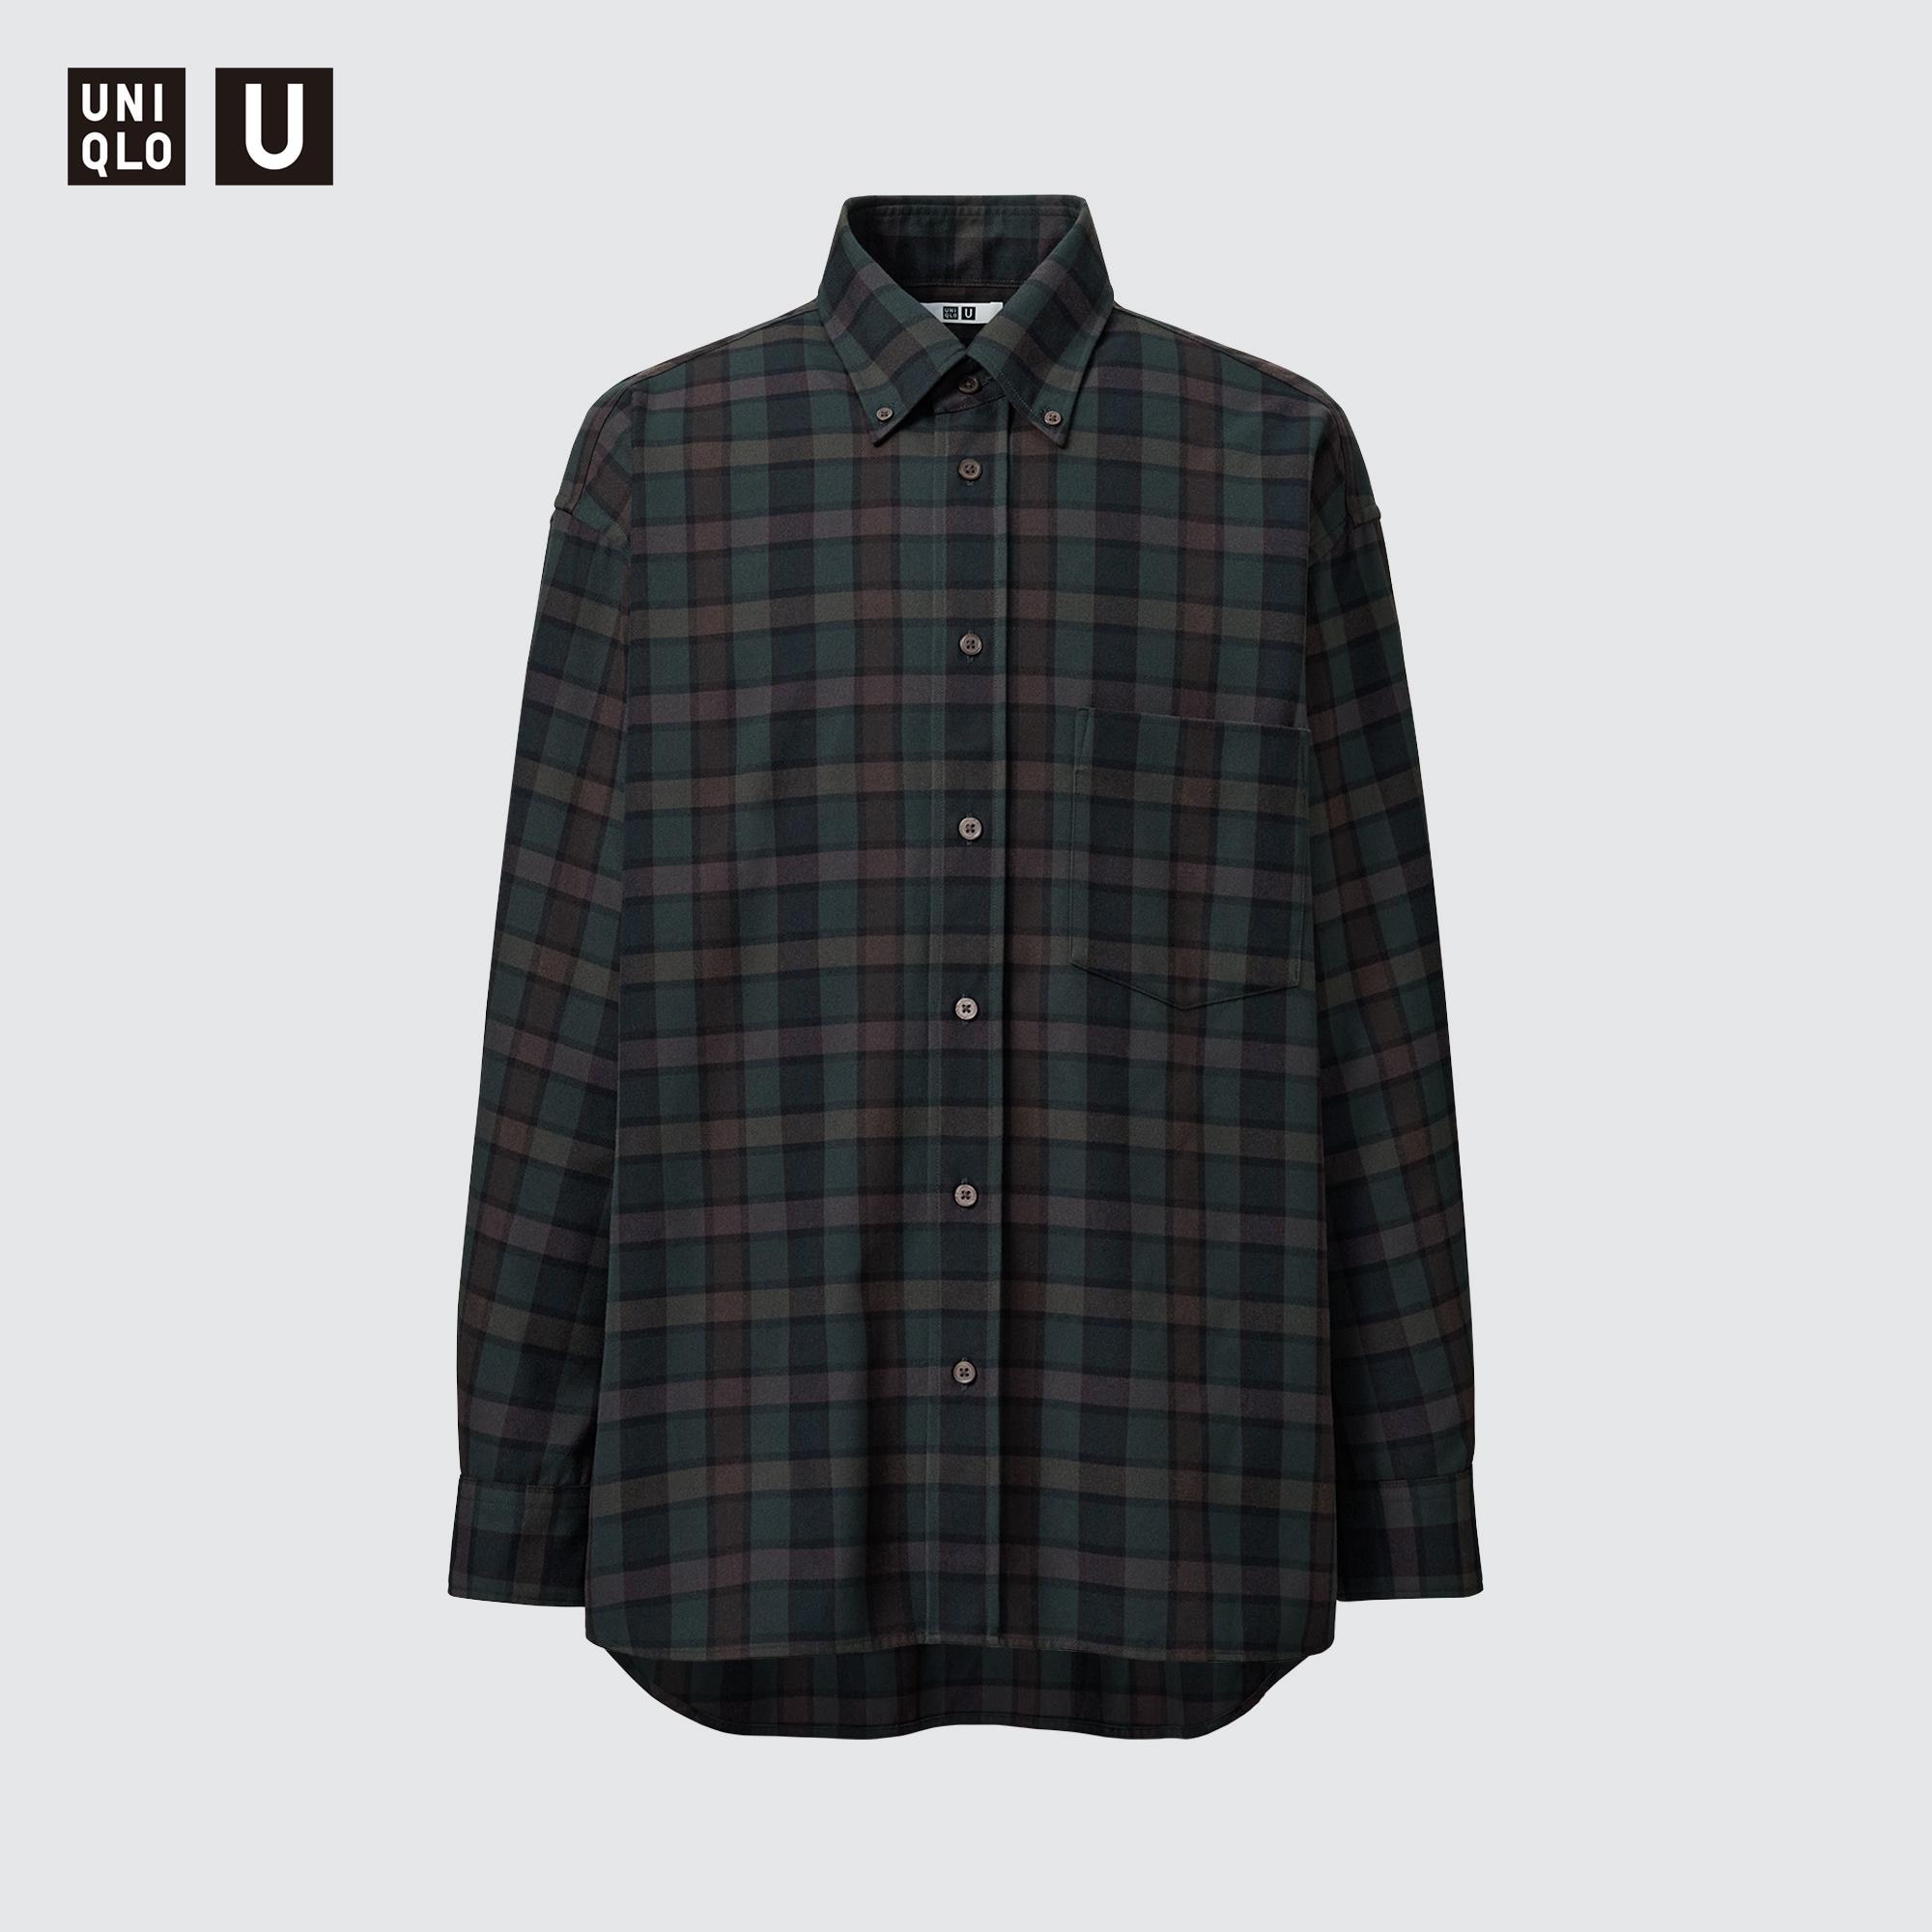 ユニU 23AW ツイルオーバーサイズチェックシャツ XL グレー-